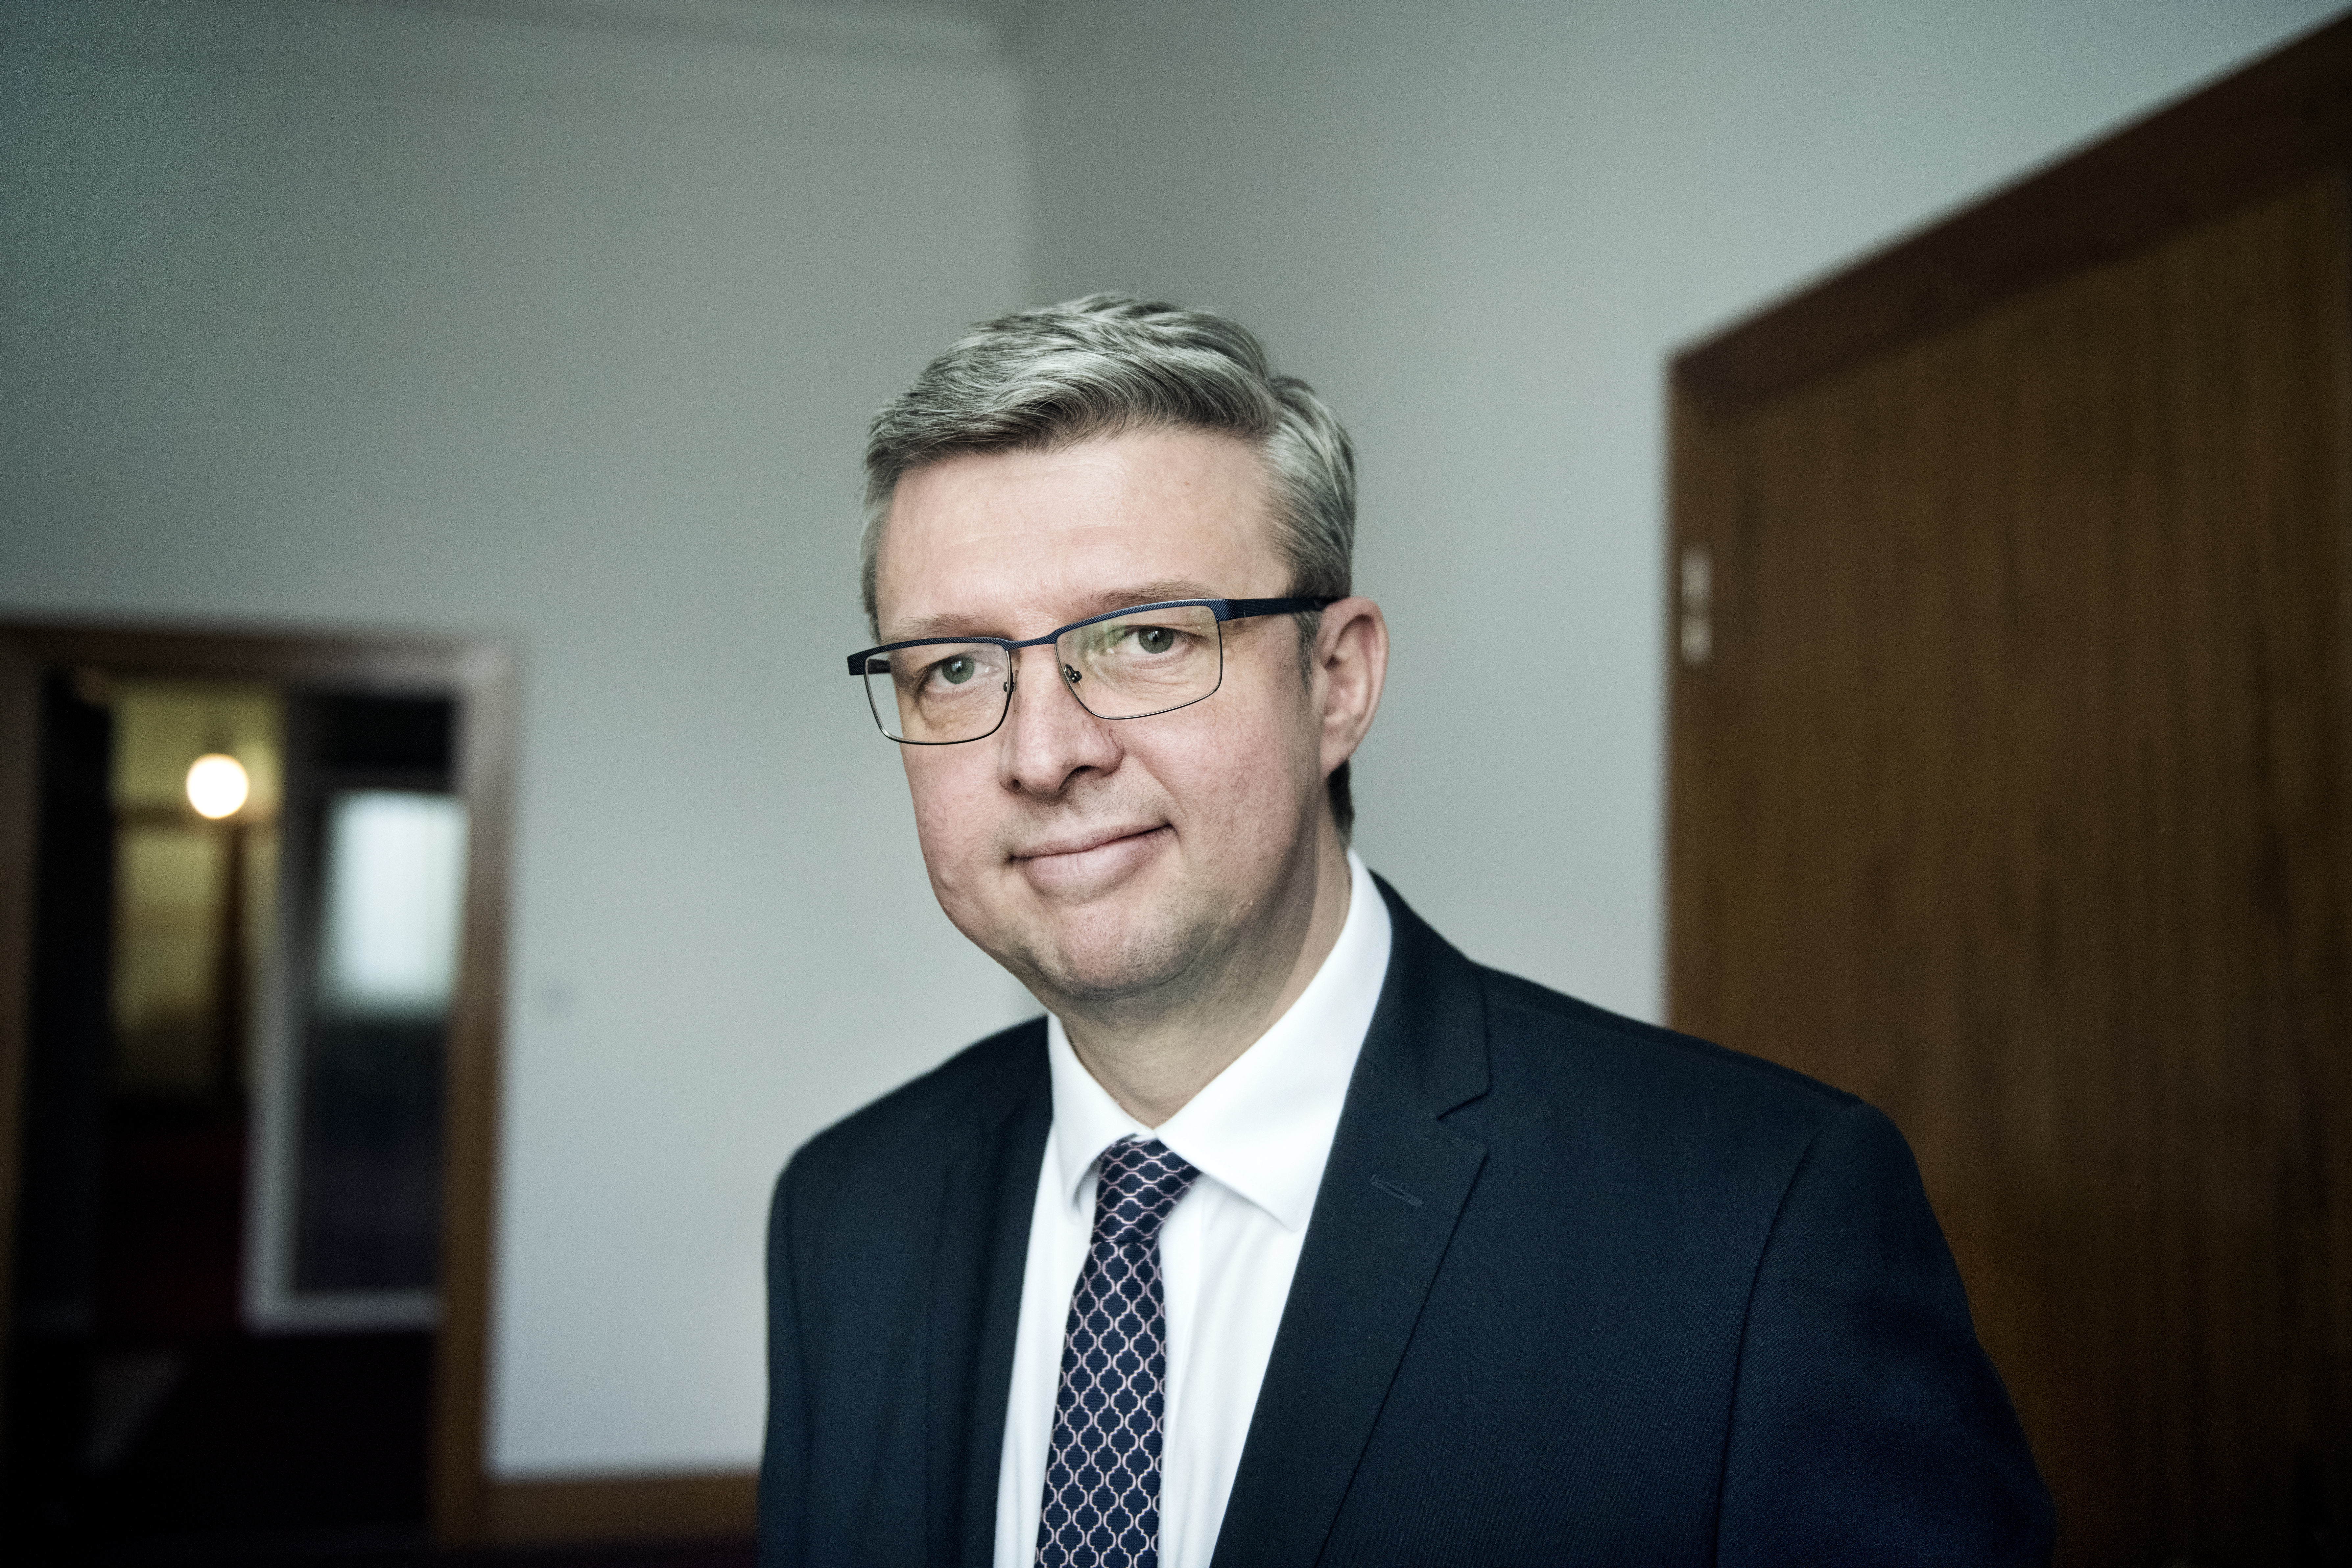 Karel Havlíček, místopředseda Rady pro výzkum, vývoj a inovace, předseda Asociace malých a středních podniků a živnostníků